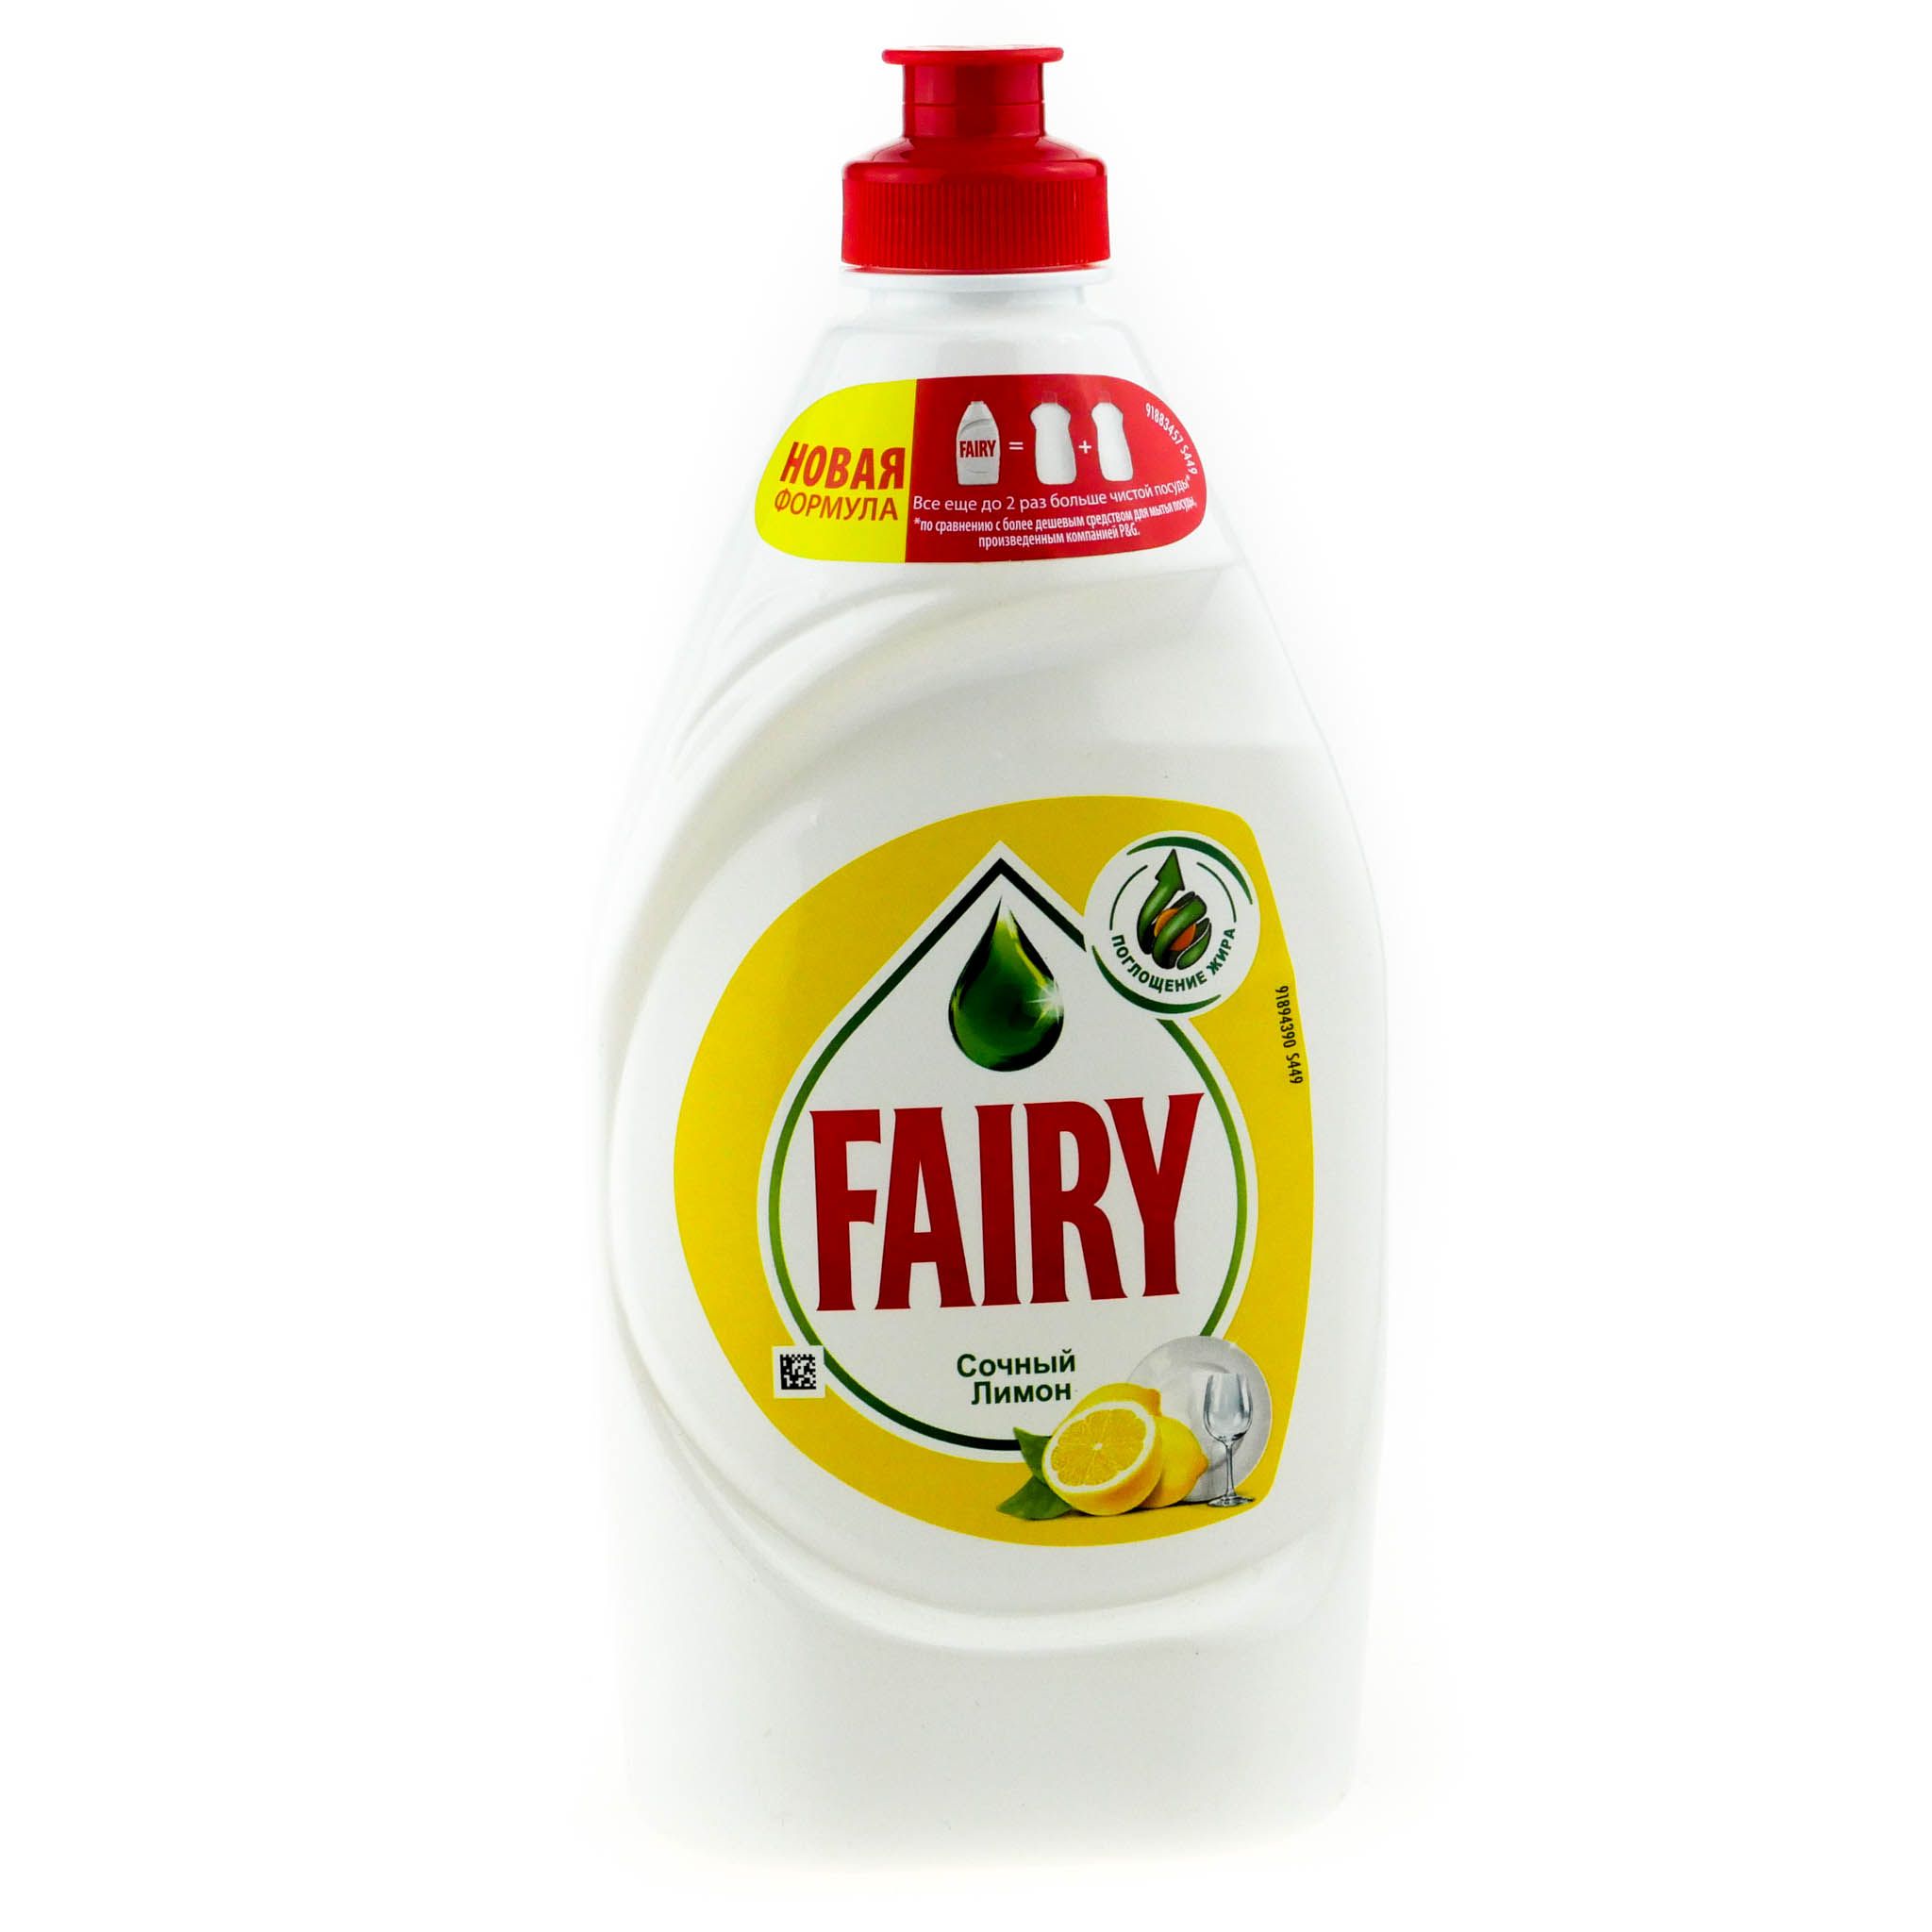 Fairy средство для мытья посуды сочный. Fairy сочный лимон 450 мл. Средство для мытья посуды Fairy 450 мл. Fairy средство для мытья посуды зеленое яблоко 450мл. Средство д/мытья посуды Фейри зеленое яблоко 450мл.